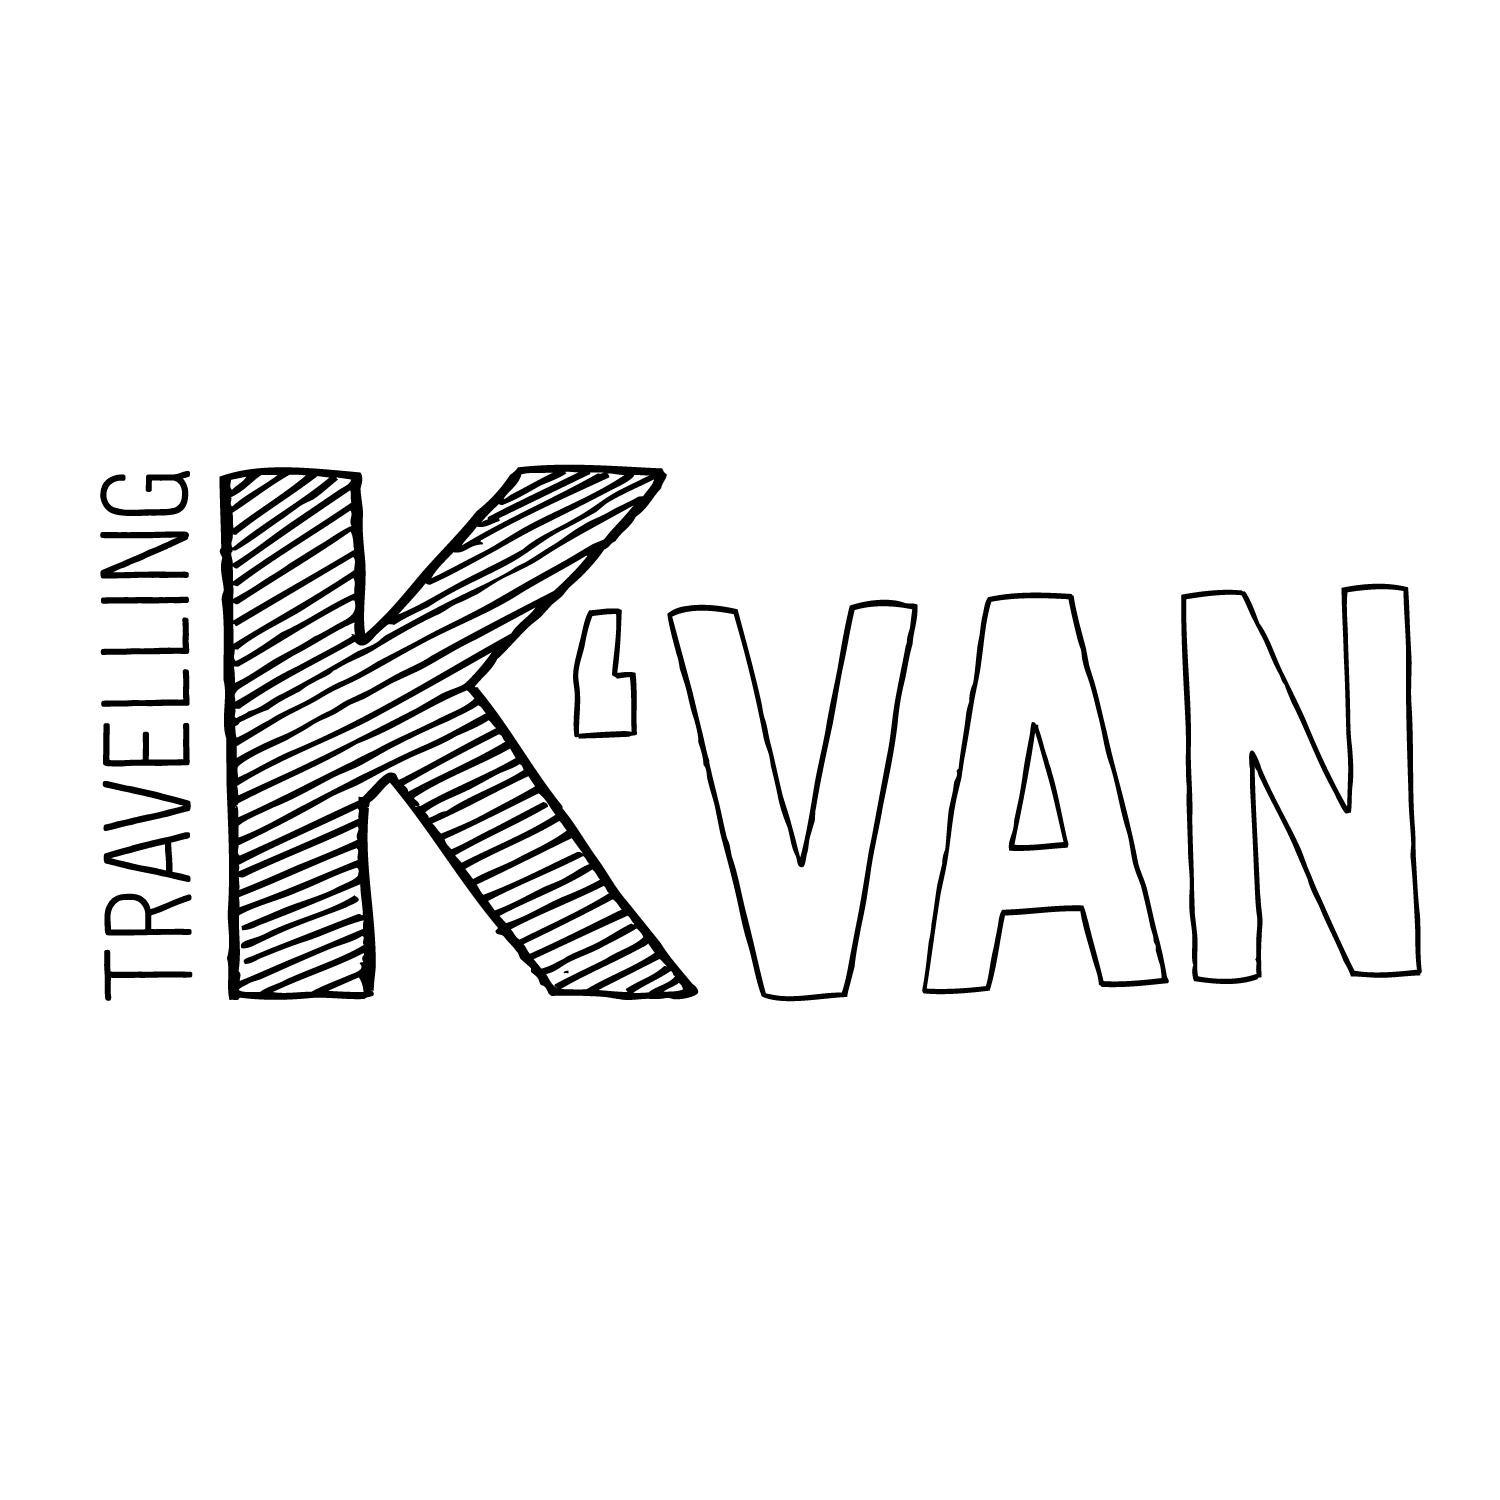 K-Van